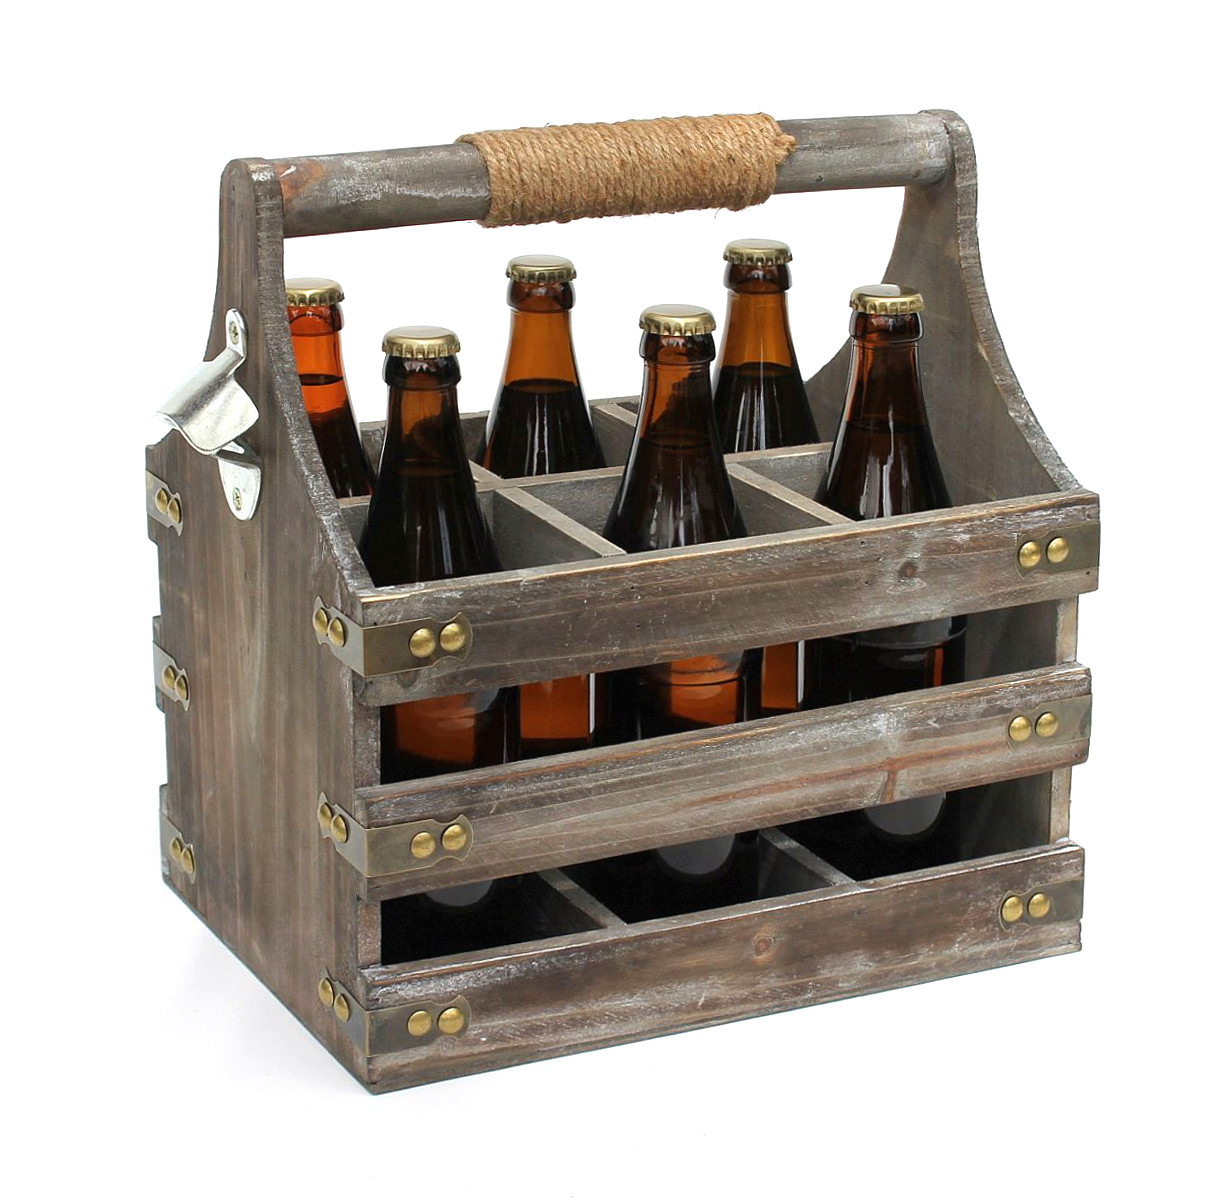 DanDiBo Bierträger aus Holz Flaschenträger Männerhandtasche Flaschenöffner Männergeschenke-DanDiBo 93860 Öffner mit Flaschenkorb